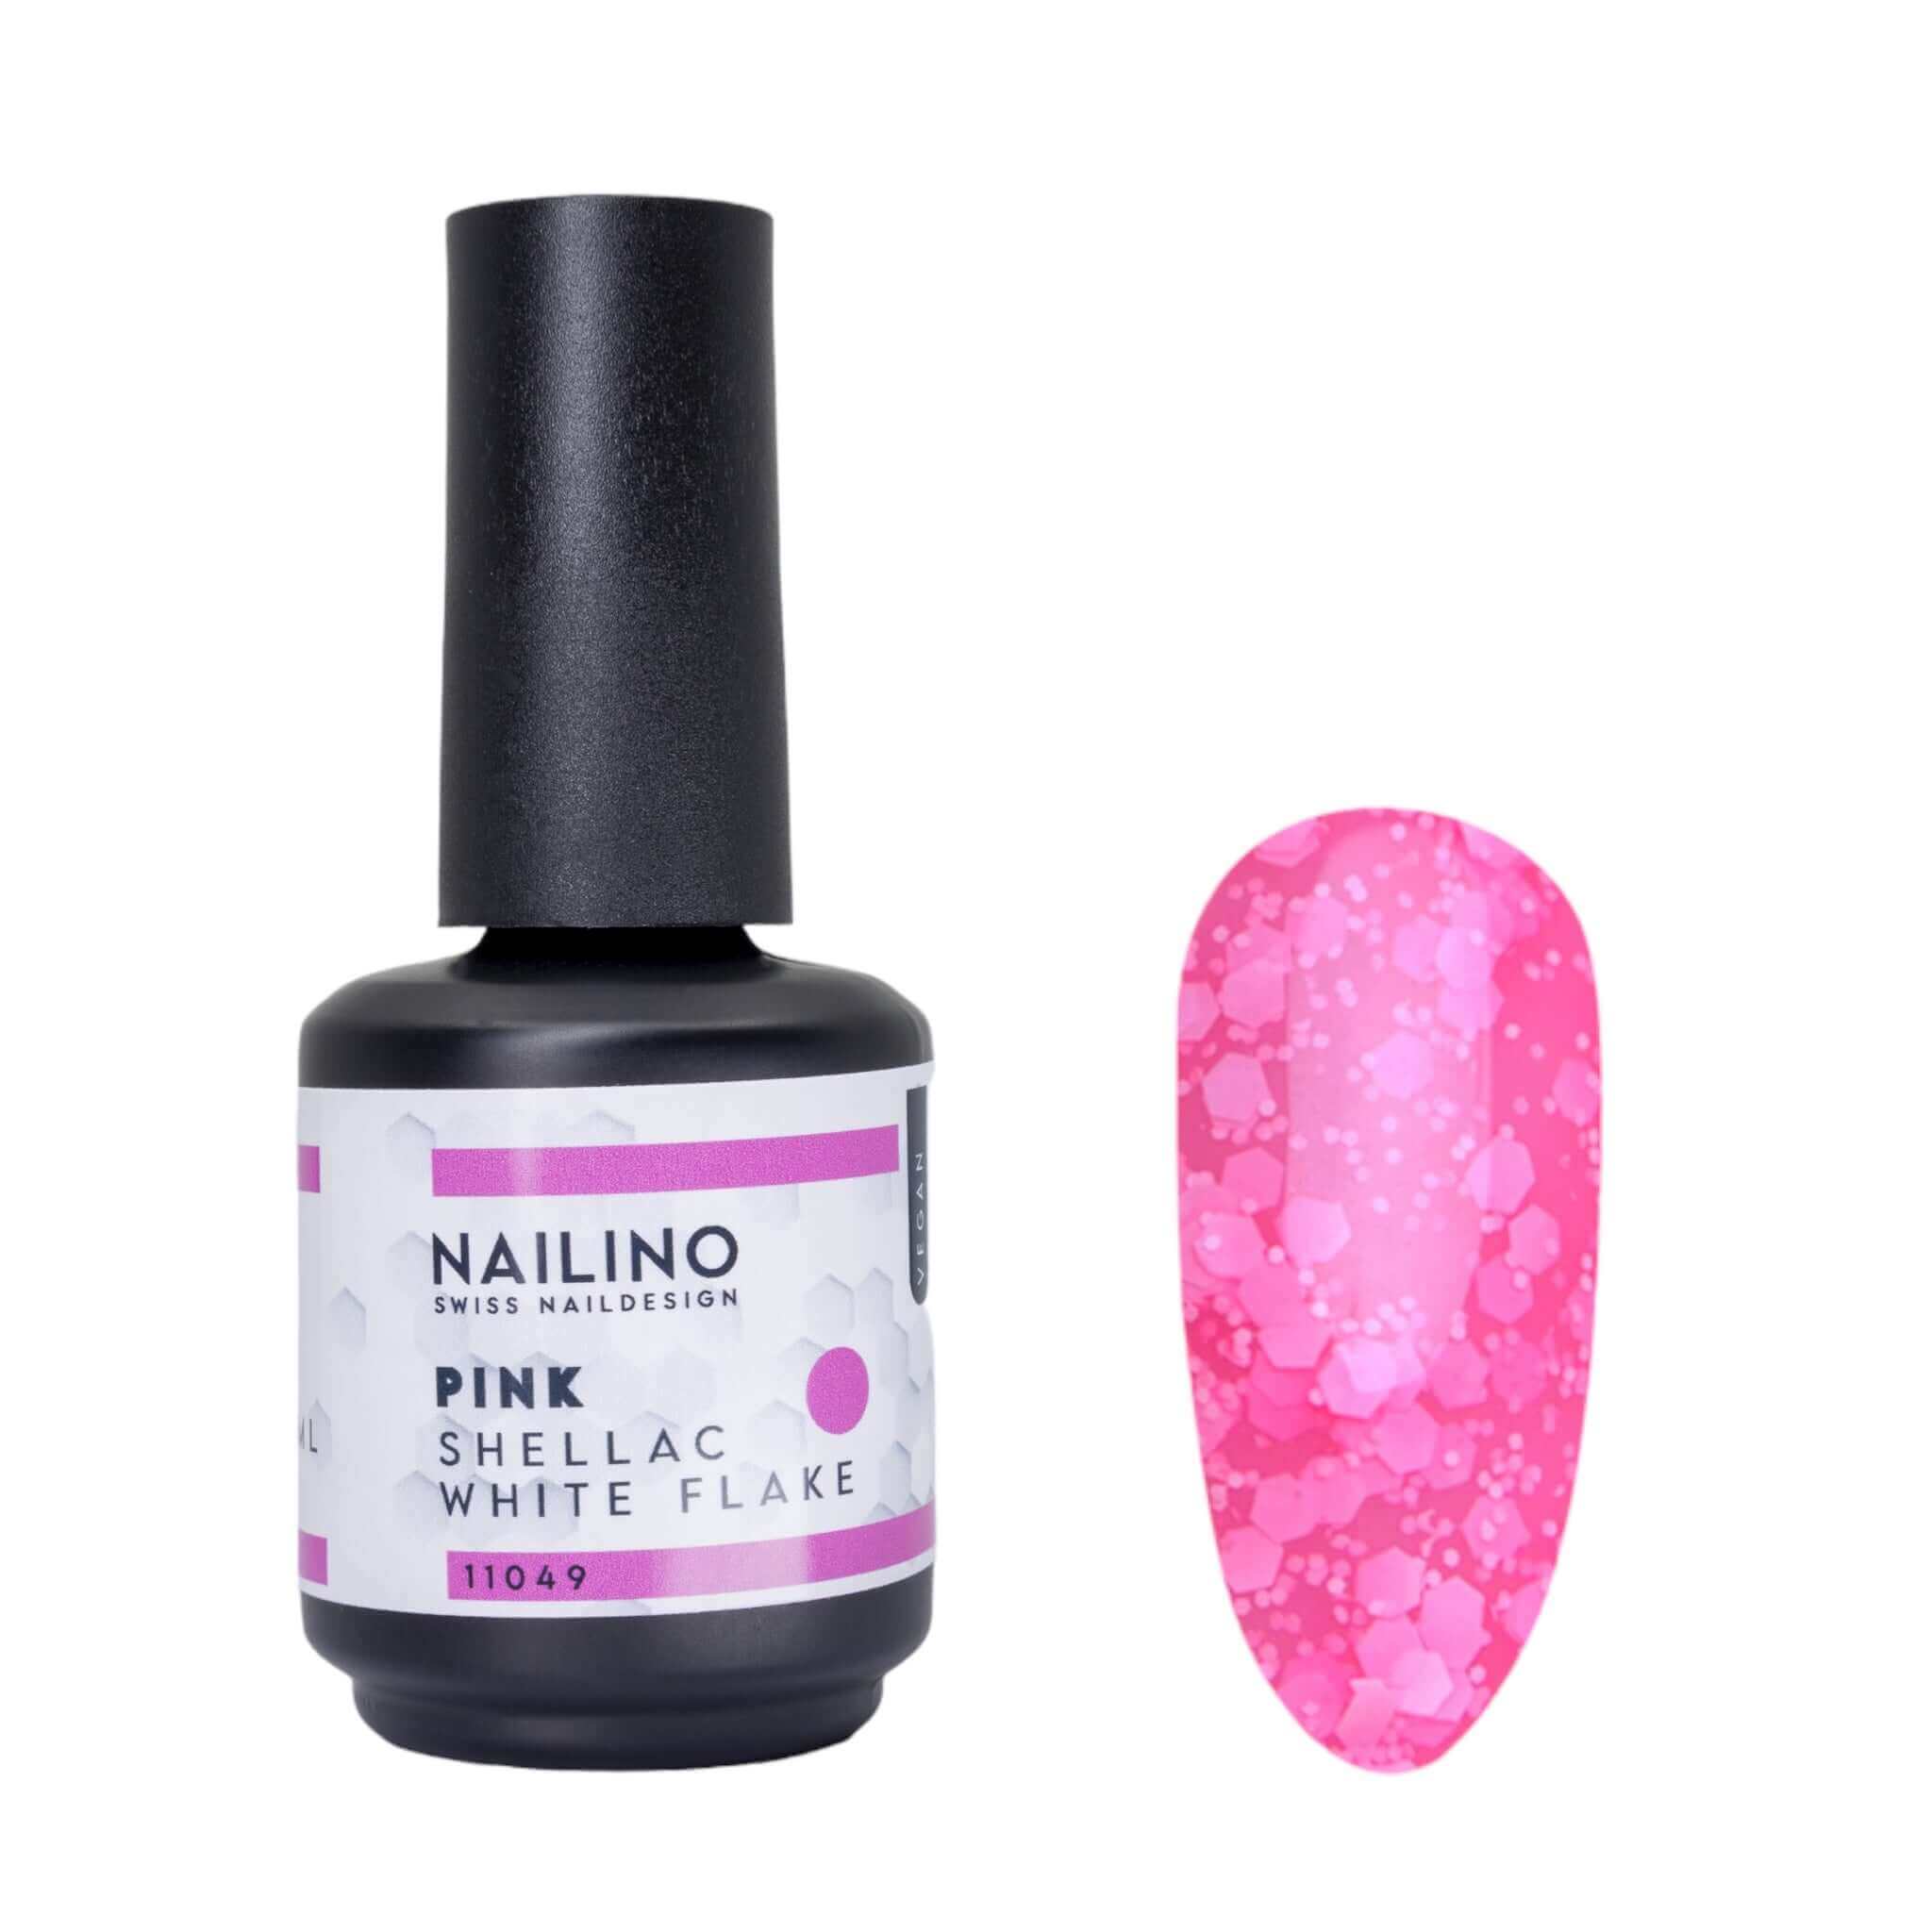 NAILINO Shellac White Flake Pink -